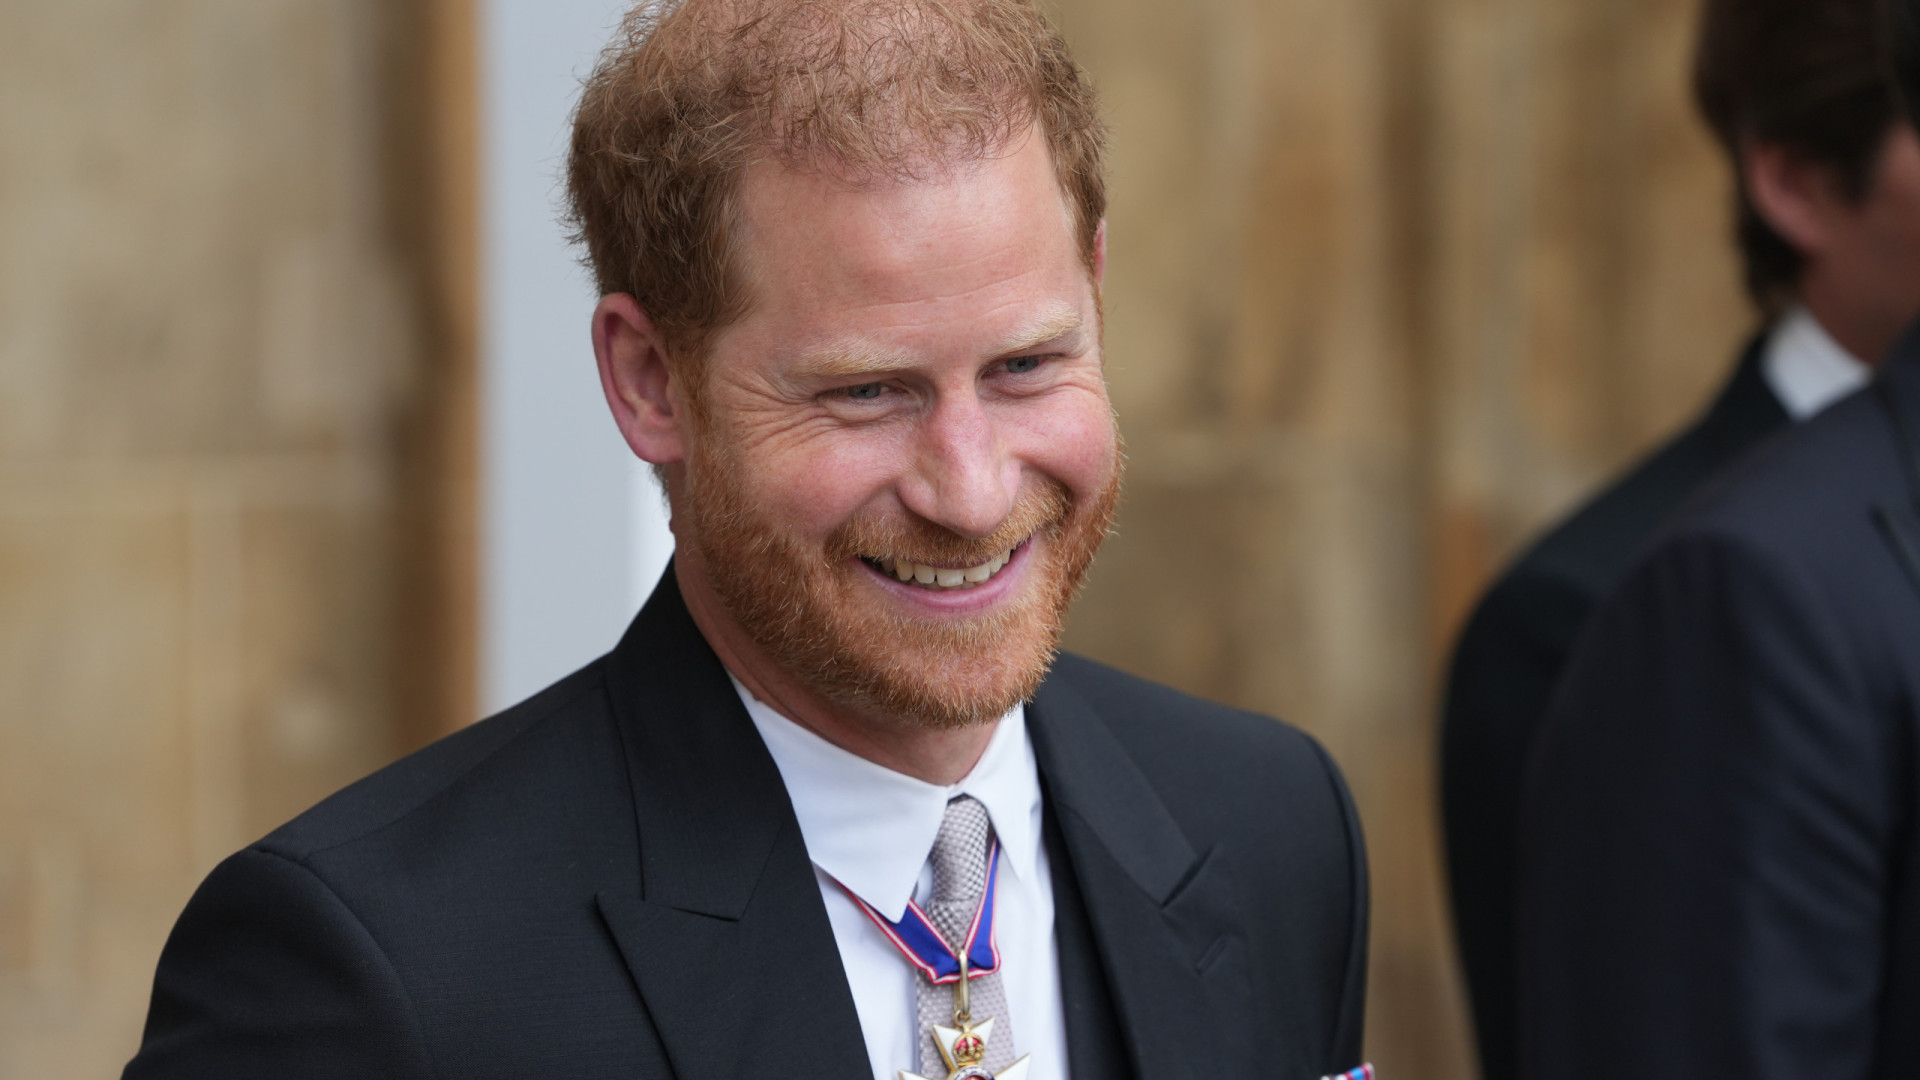 Membros da família real questionaram por que Harry foi à coroação, diz site